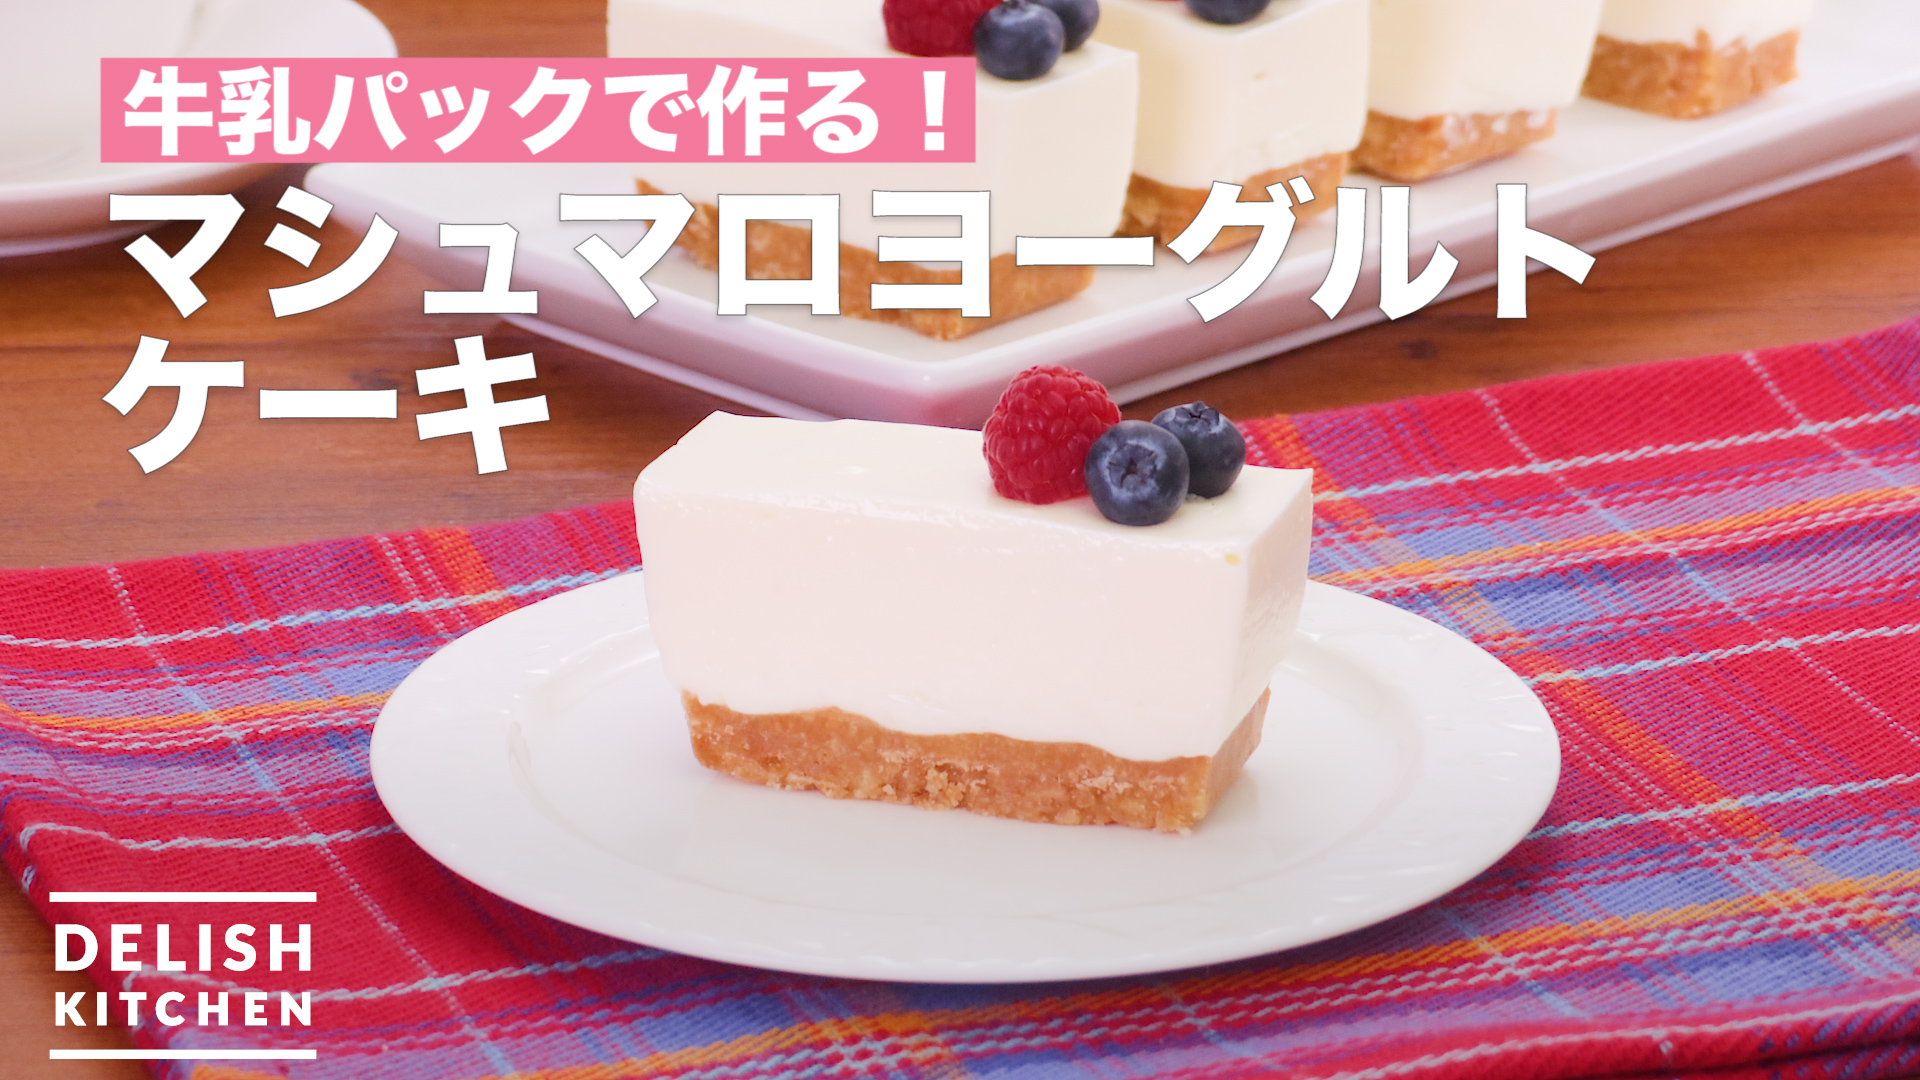 牛乳パックで作る マシュマロヨーグルトケーキ How To Make Marshmallow Yogurt Cake Delish Kitchen デリッシュキッチン Yahoo Japan